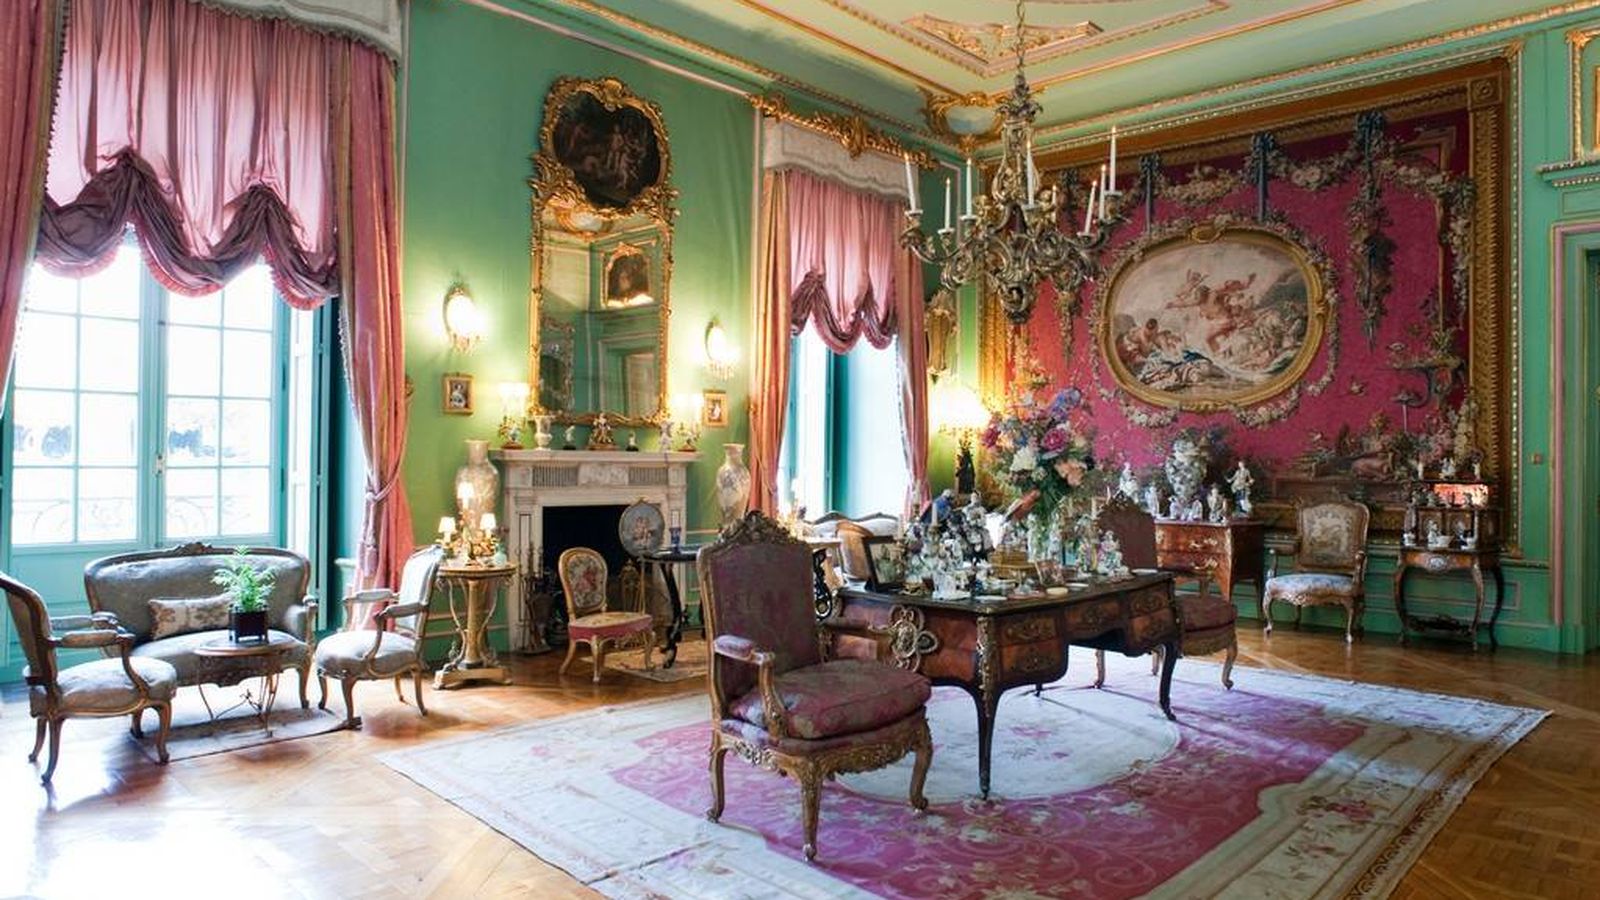 Foto: Interior del palacio de Liria. (Cortesía)